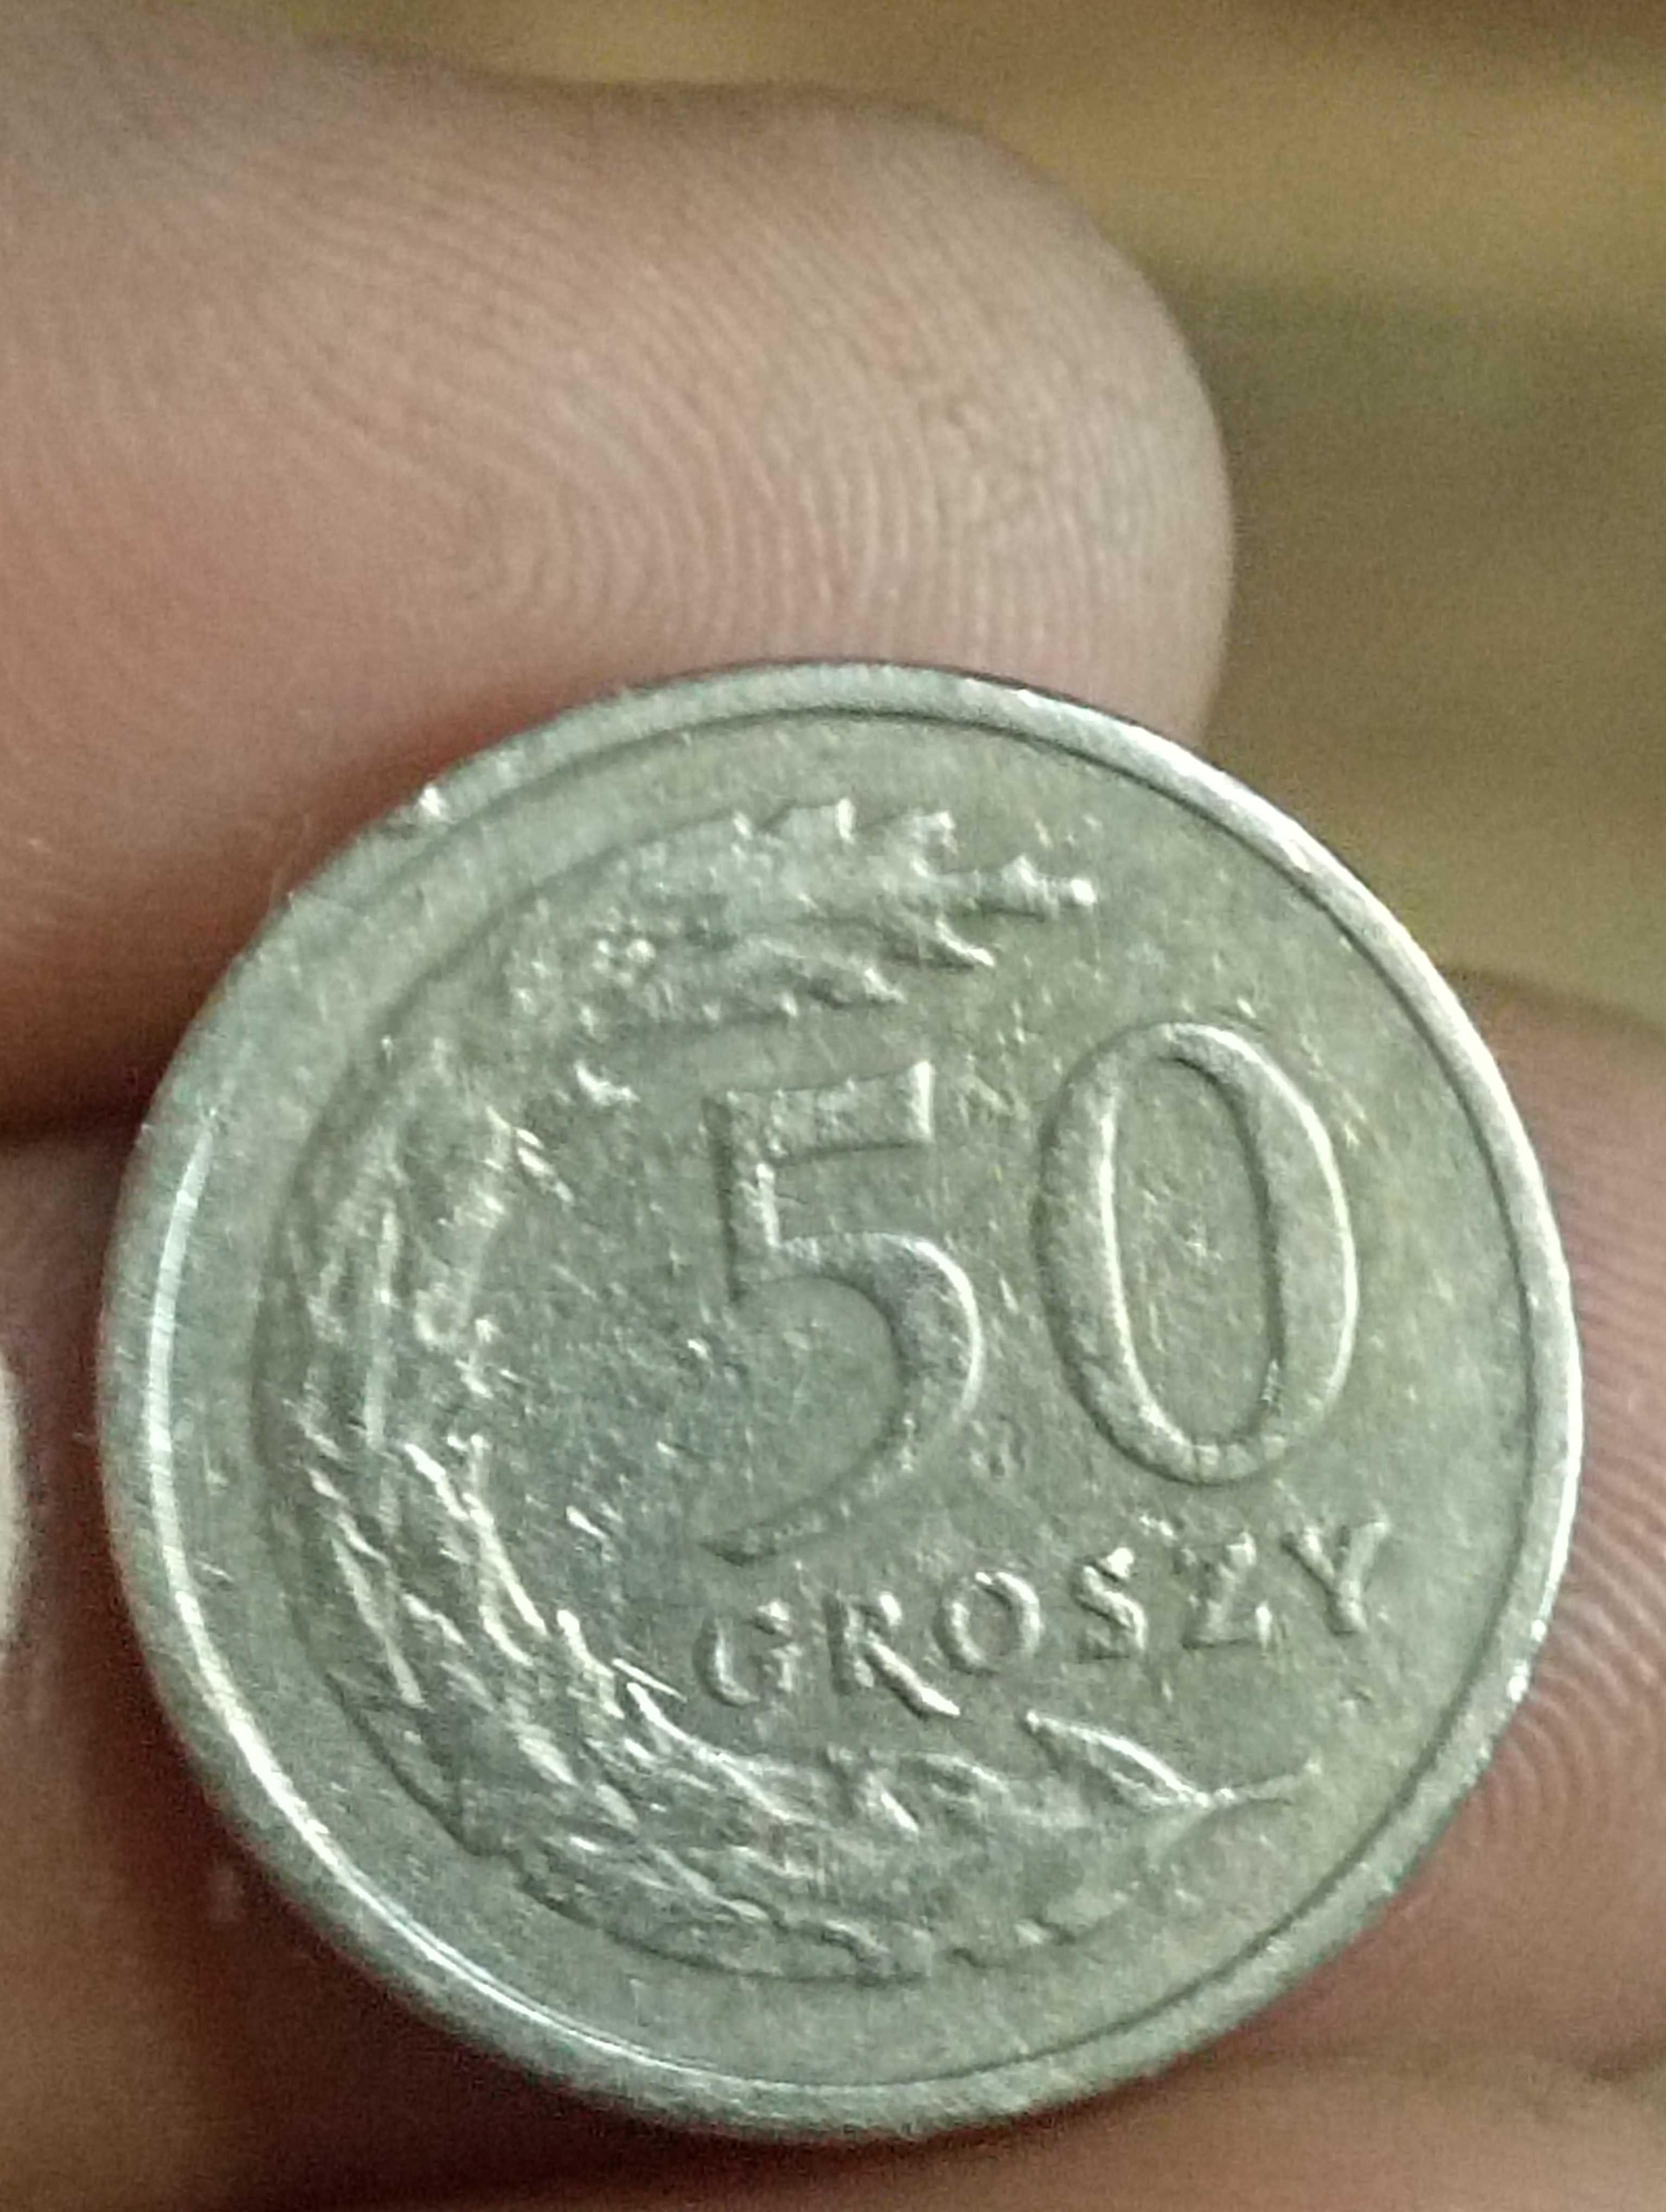 sprzedam piata monetę 50 groszy 1990 rok